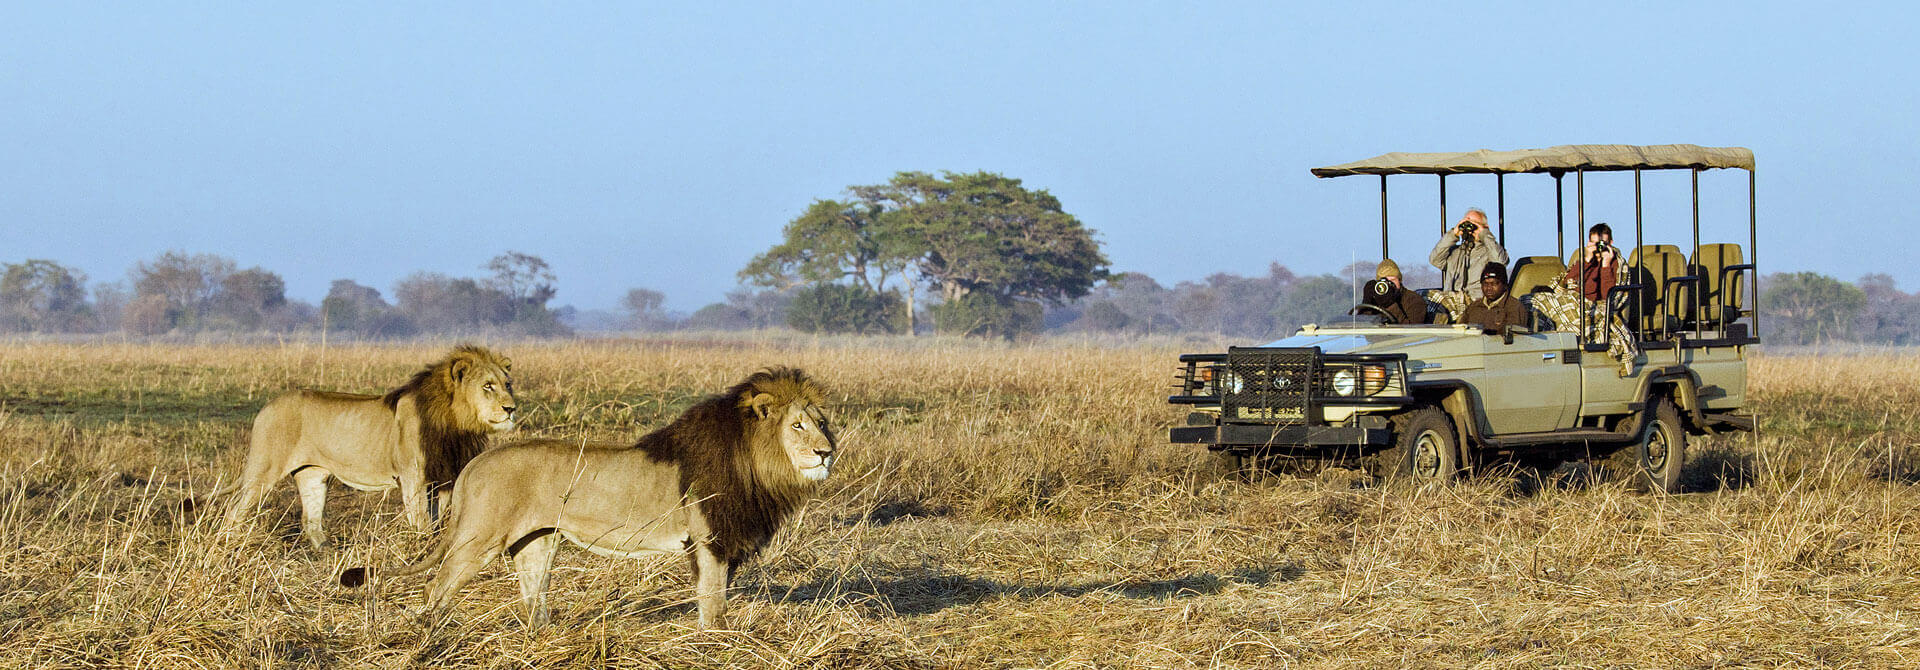 Un safari sur mesure en Afrique, cela vous tente ?